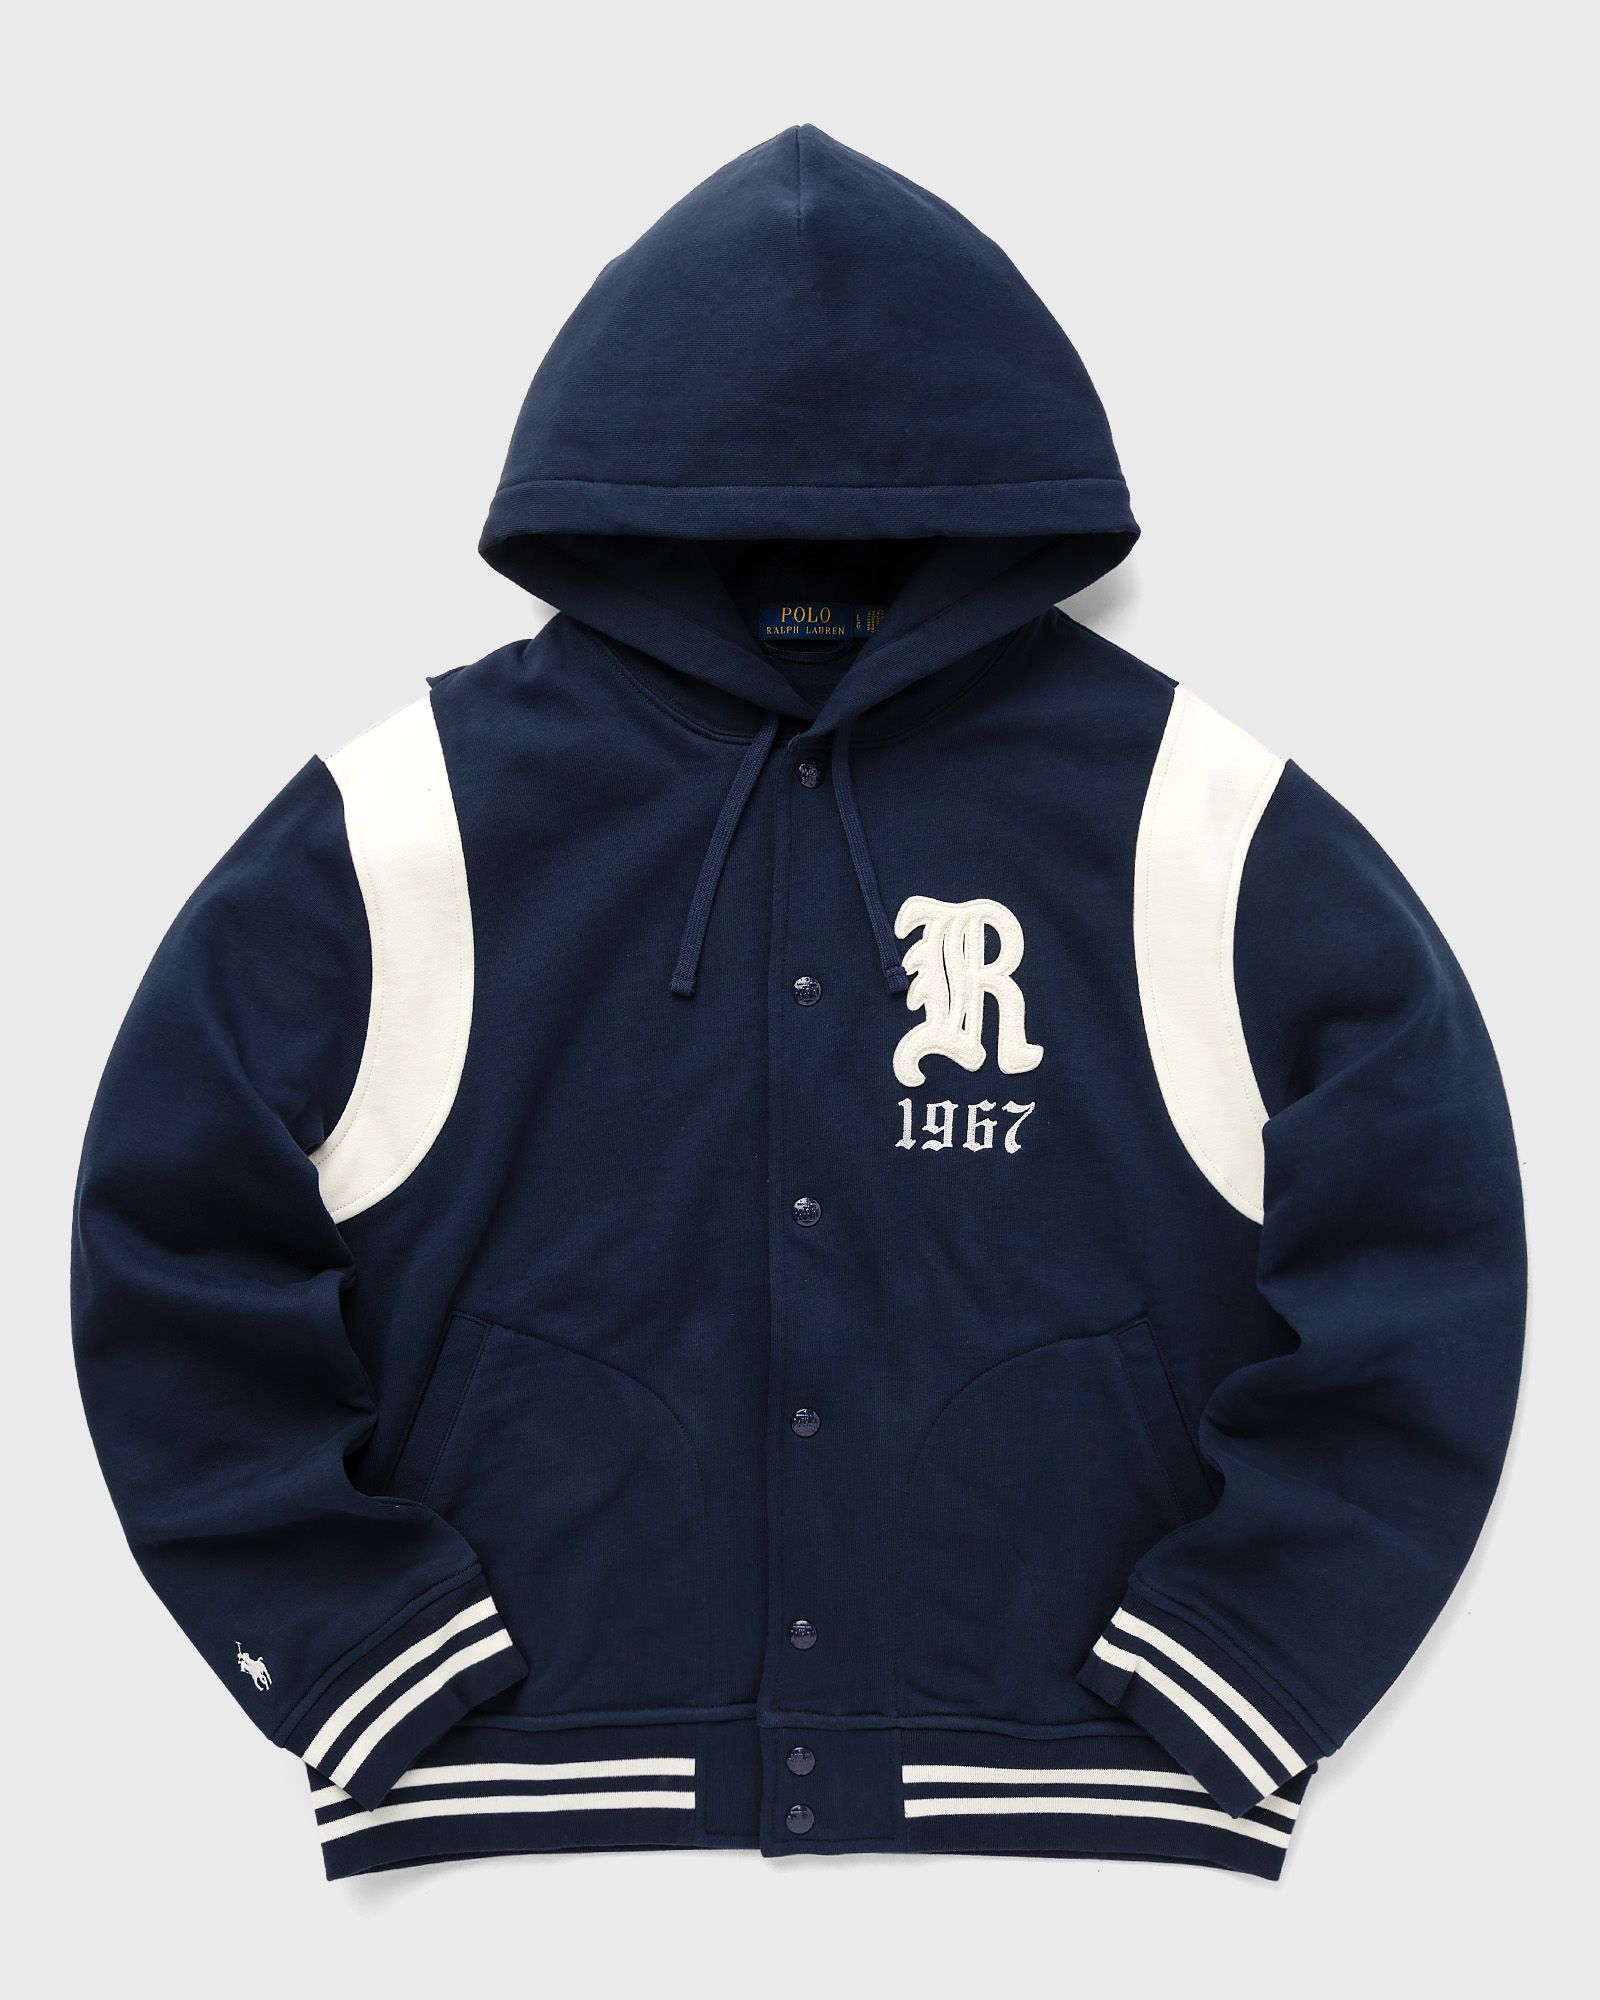 Polo Ralph Lauren - baseblhoodm1-l/s hooded baseball jacket men college jackets|hoodies|zippers blue in größe:l